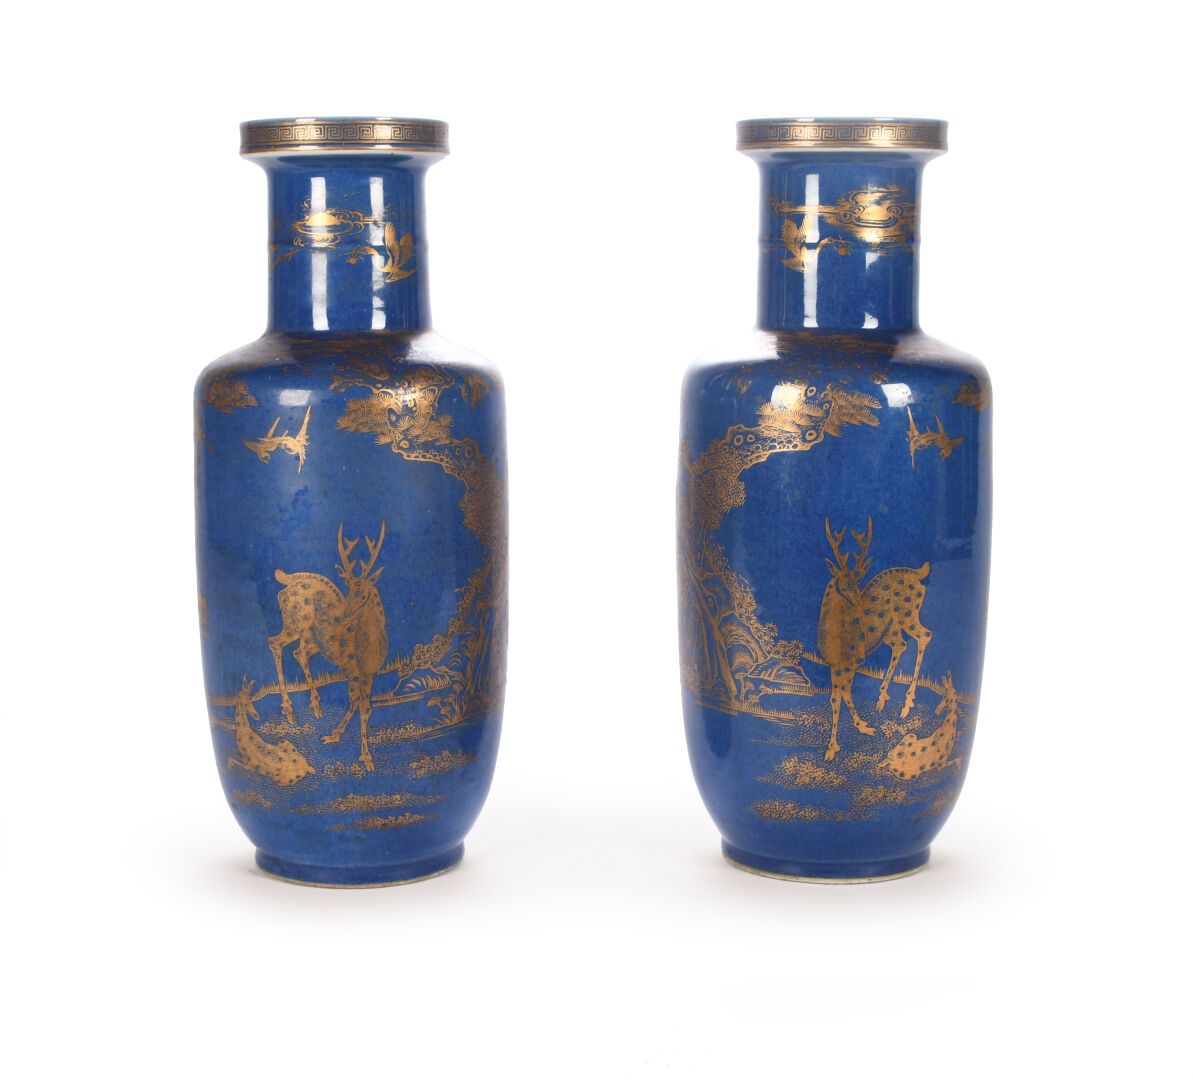 Null 中国 - 约1900年
一对粉青色珐琅彩瓷卷轴花瓶，用金色珐琅彩装饰着松树下的鹿。颈部装饰有雷文浮雕。背面有景德镇天柱堂的标记。高45.5厘米
出处：&hellip;